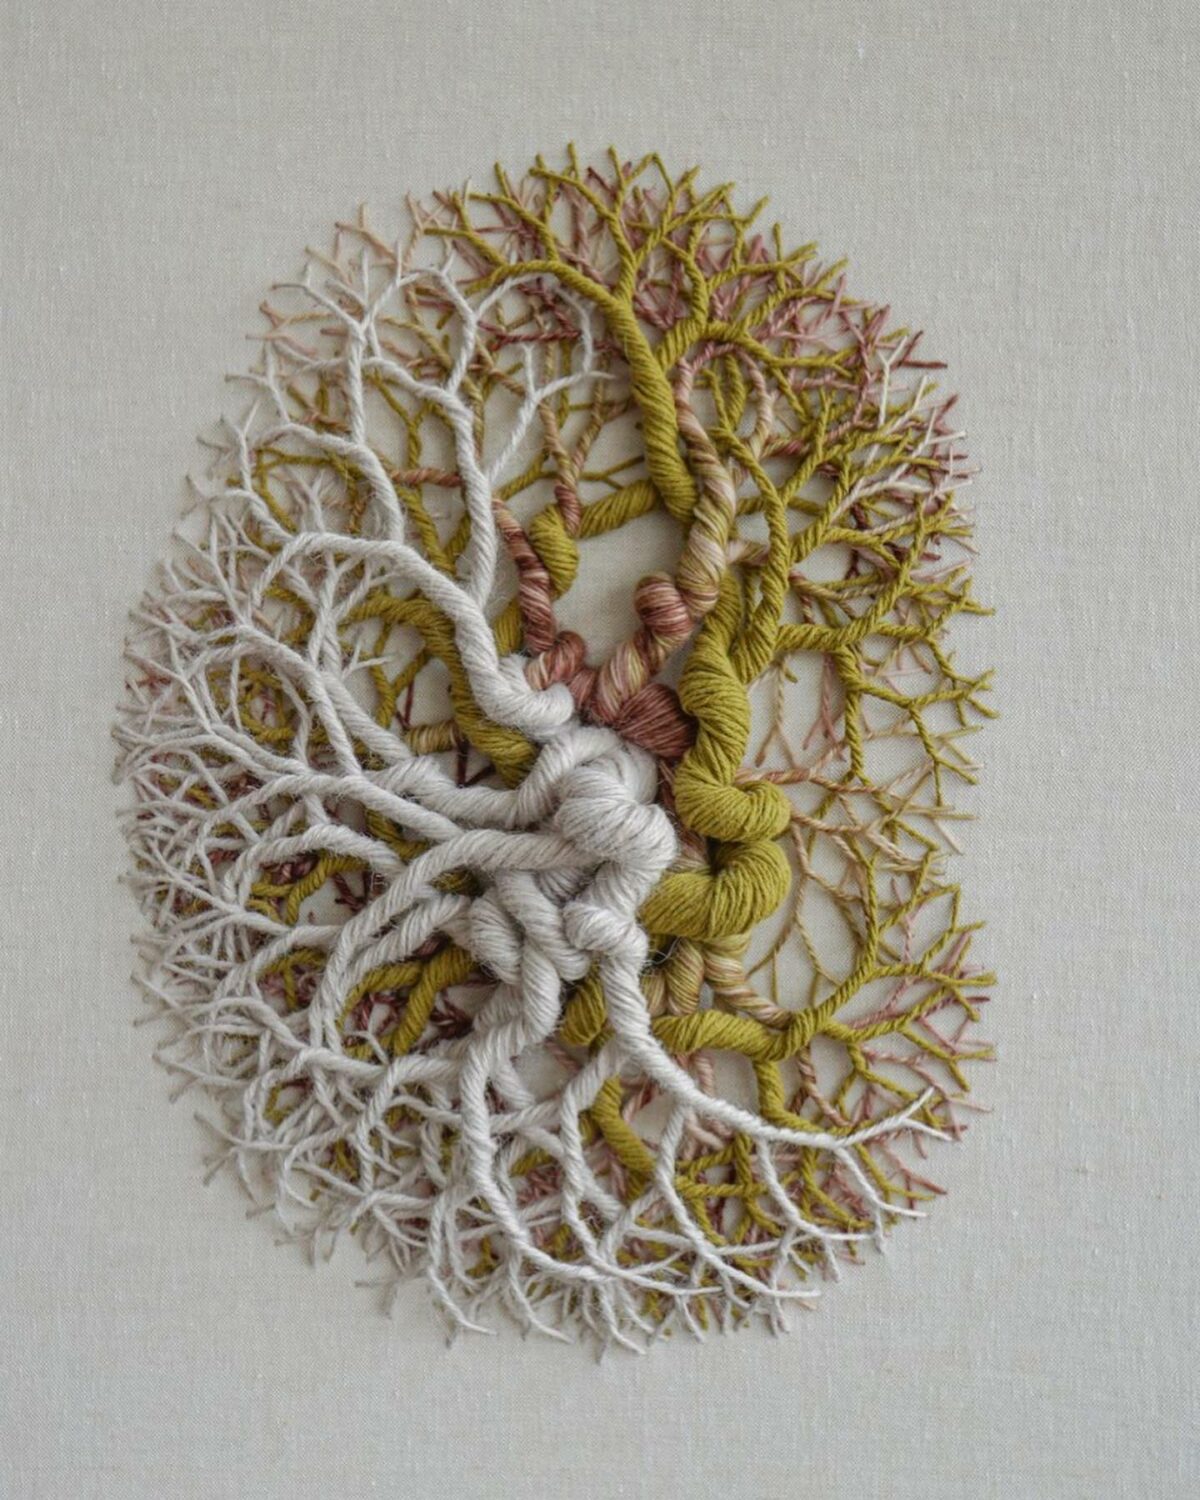 Ciclotramas Hypnotizing Tree And Roots Like Installations By Janaina Mello Landini 11